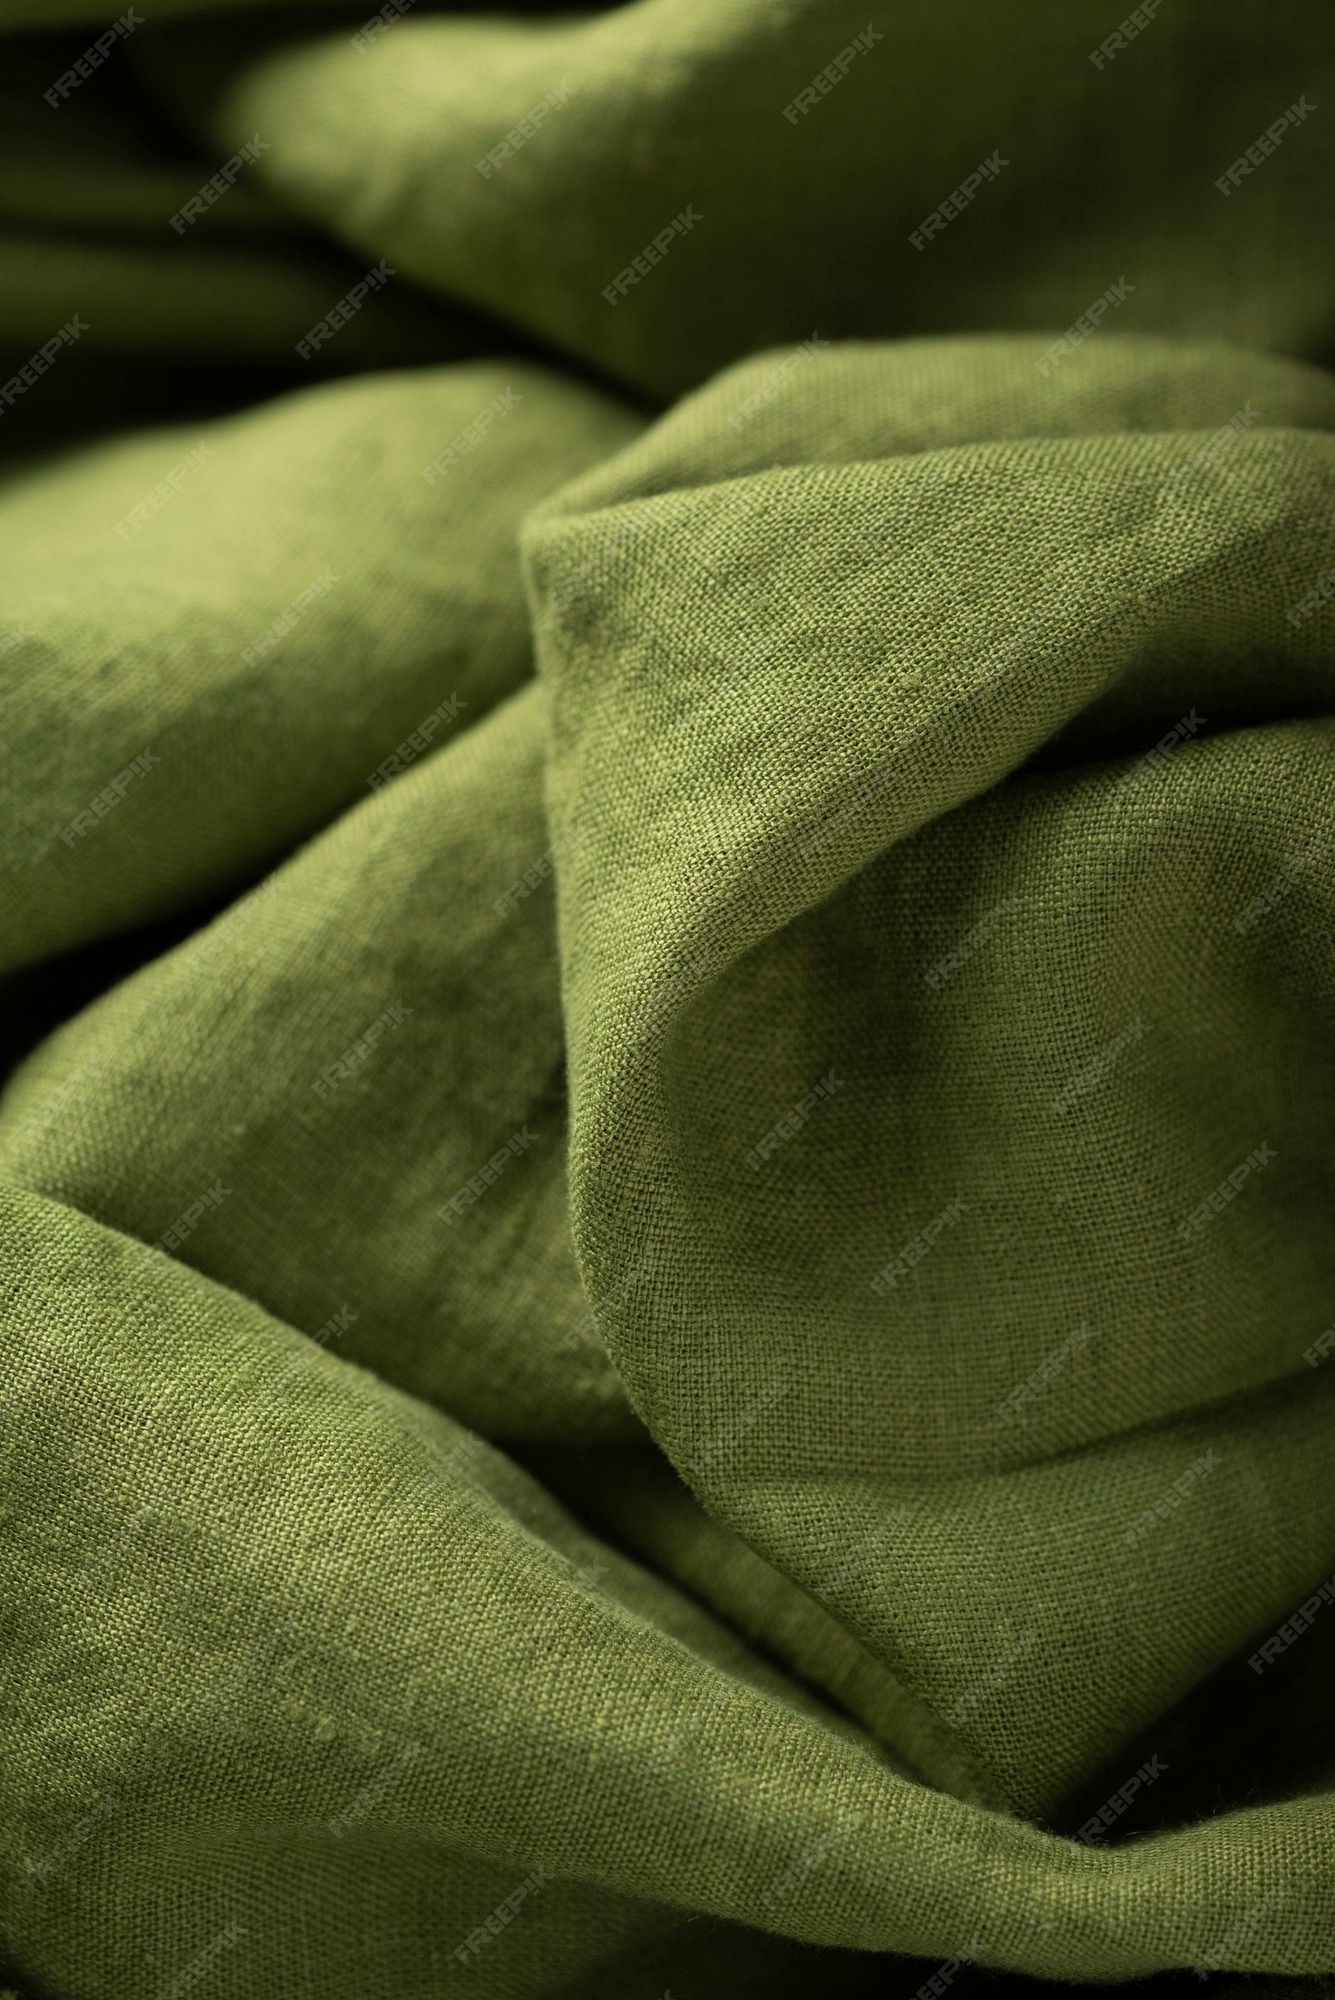 caldera seguramente Contaminado Textura de fondo de tela de lino en color verde. concepto de costura | Foto  Premium